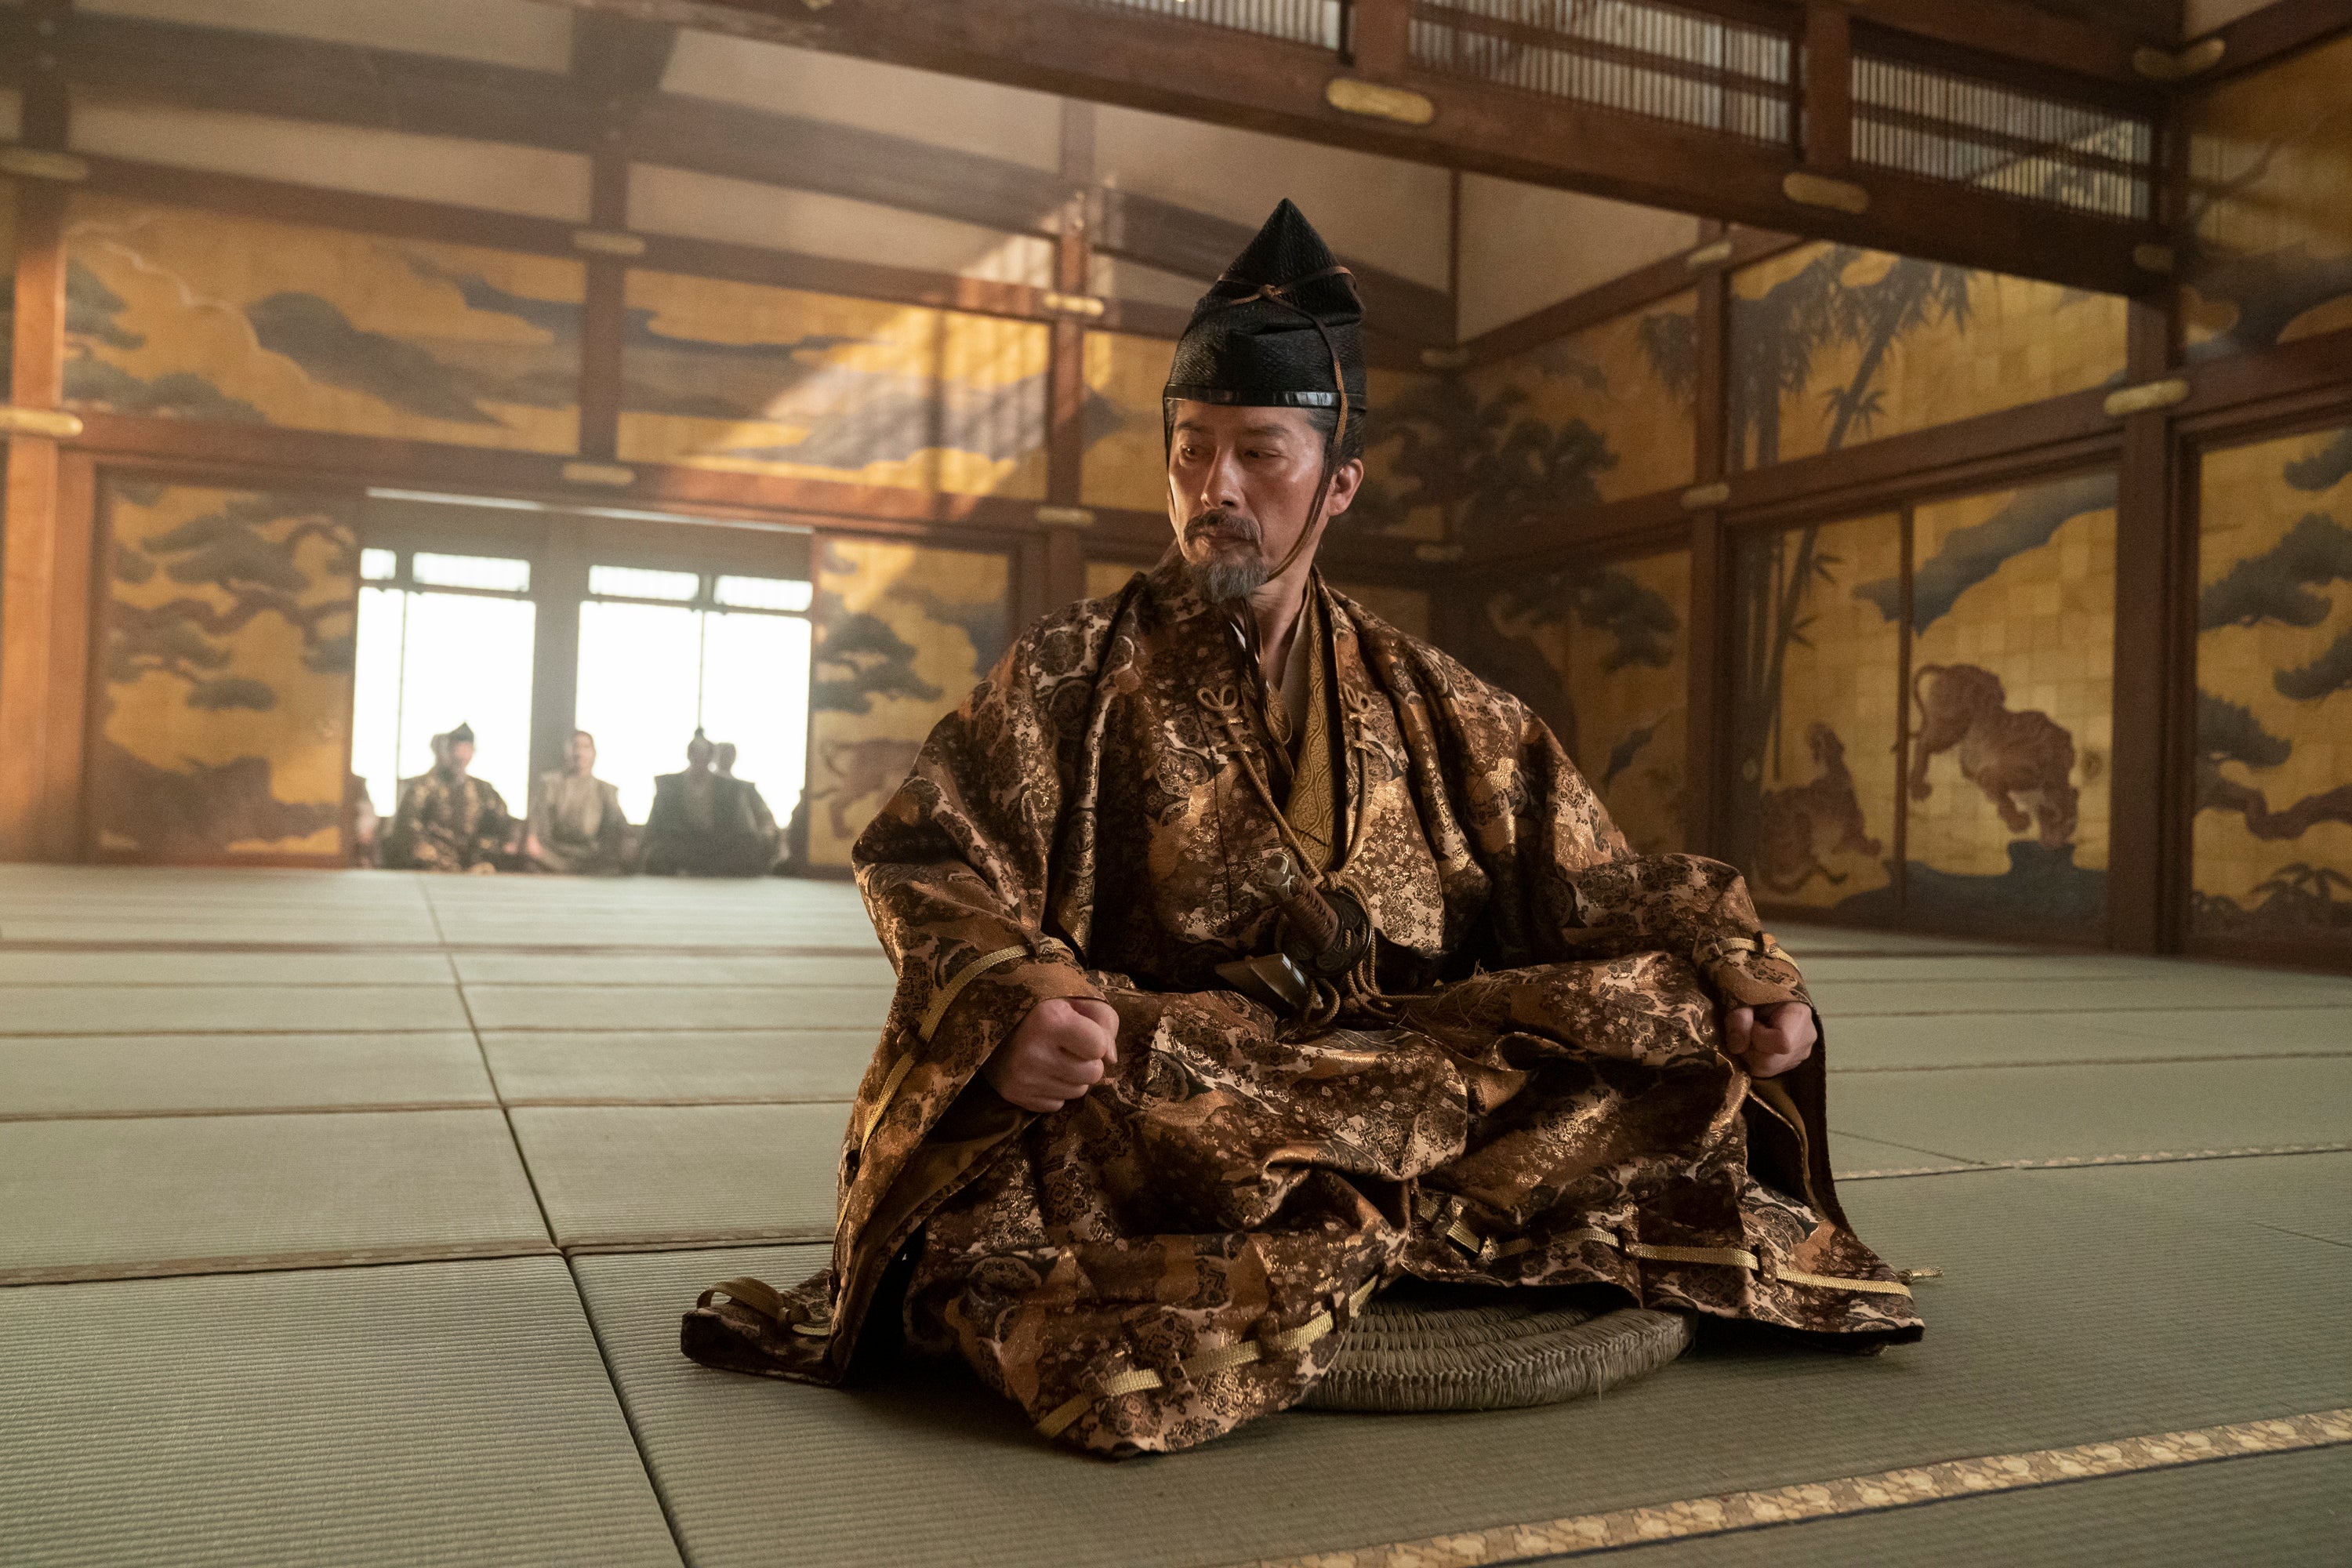 Inspired: Hiroyuki Sanada as Yoshii Toranaga in ‘Shōgun’